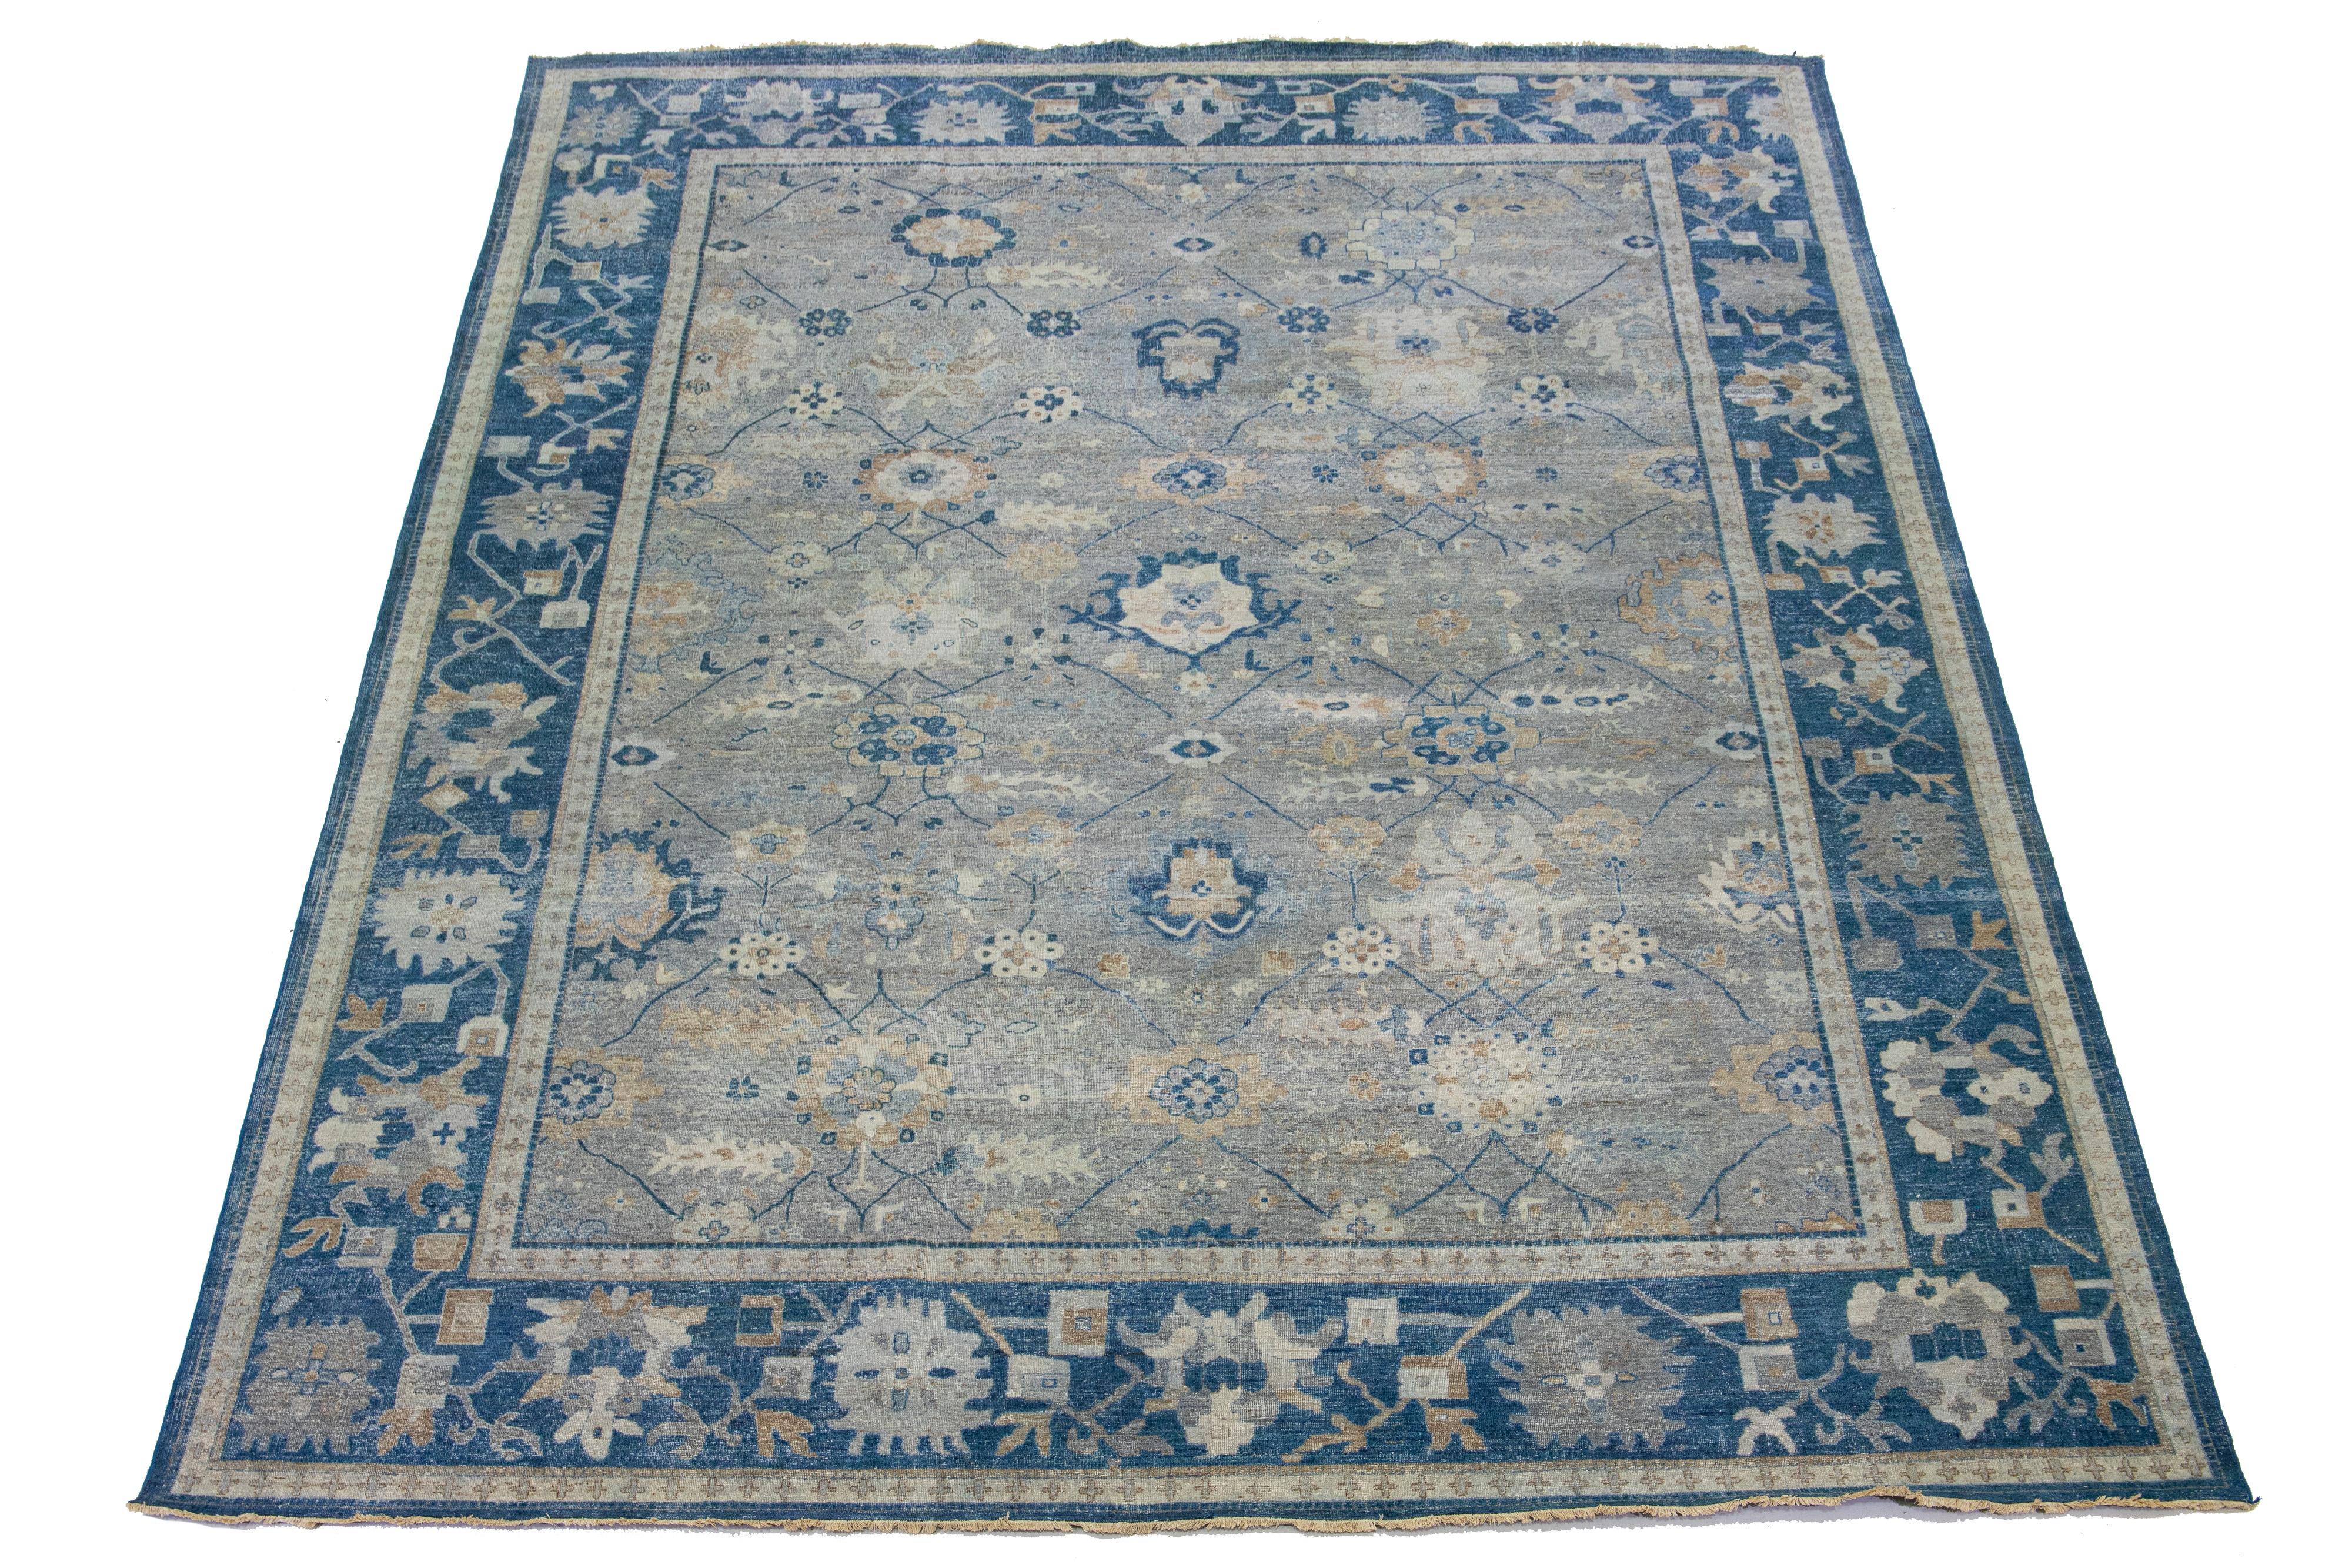 Die Artisan-Linie von Apadana bringt einen exquisiten antiken Stil in jeden Raum. Dieser handgeknüpfte Teppich zeigt ein atemberaubendes, florales Allover-Muster mit grauer Farbgebung und blauen Akzenten. Er ist 11' 11